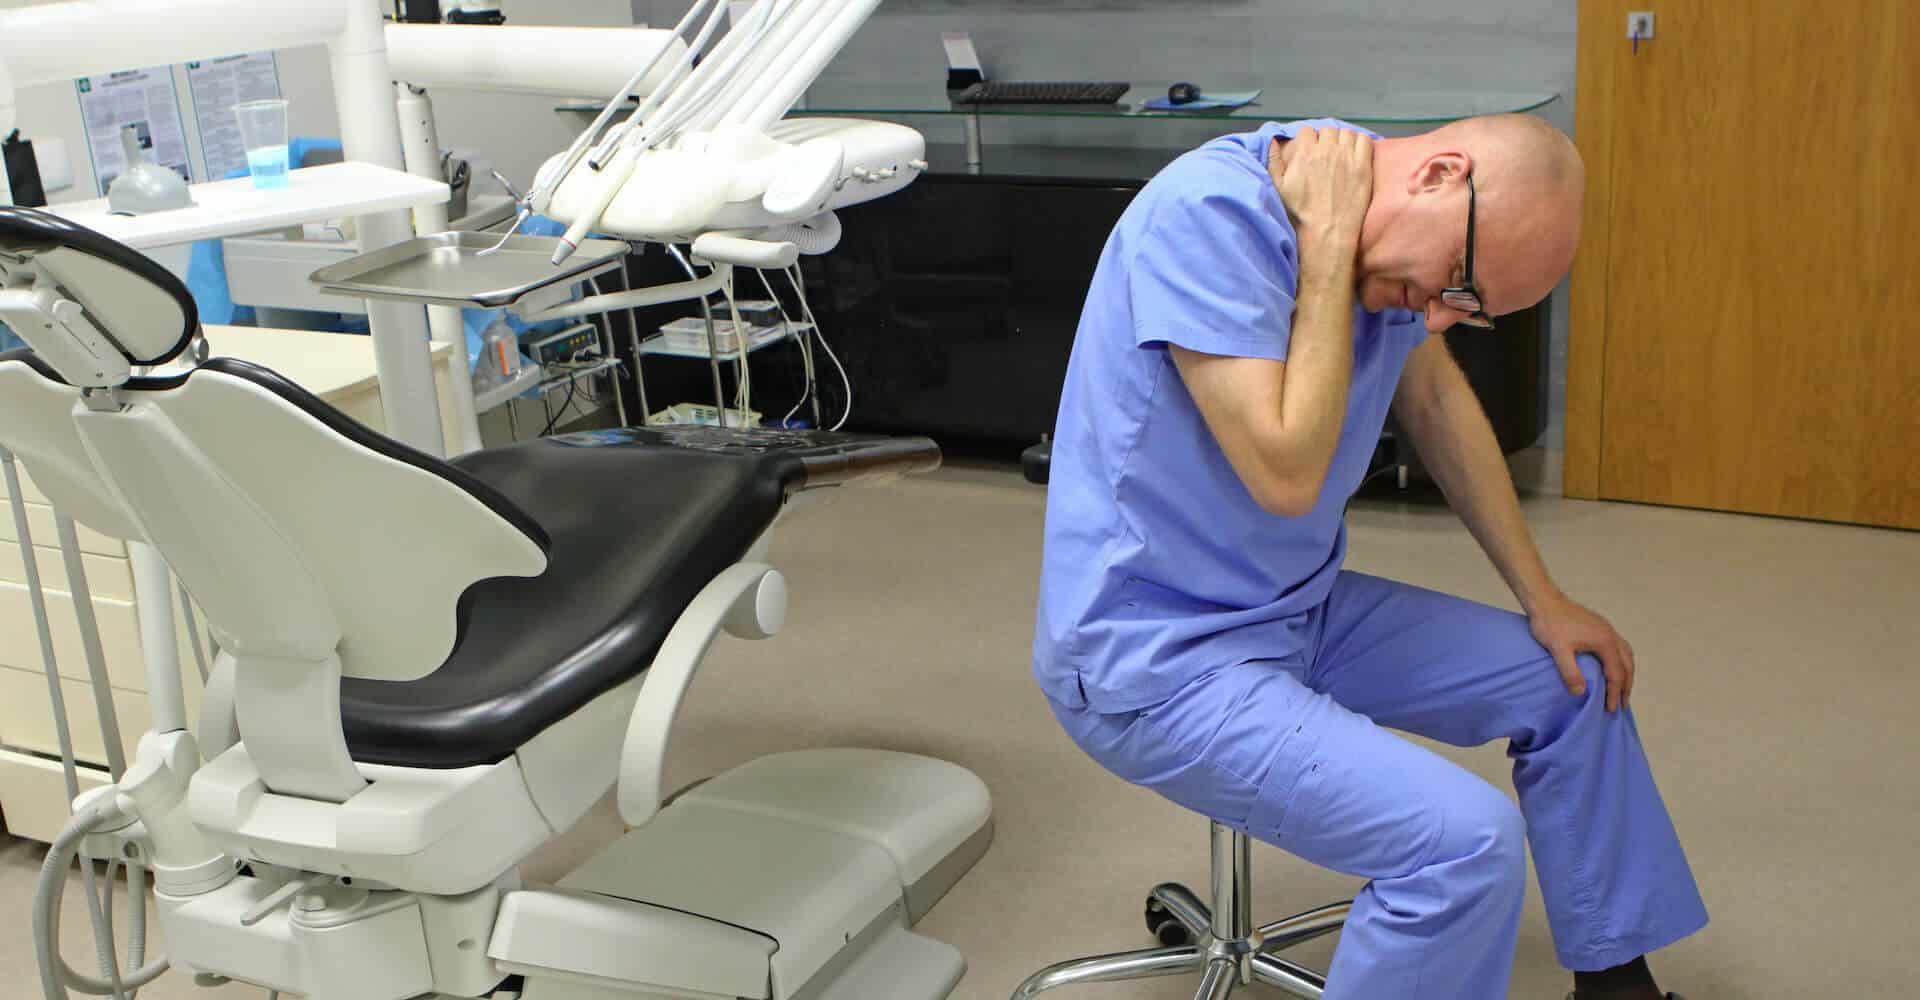 Tandlæge i dårligt arbejdsmiljø